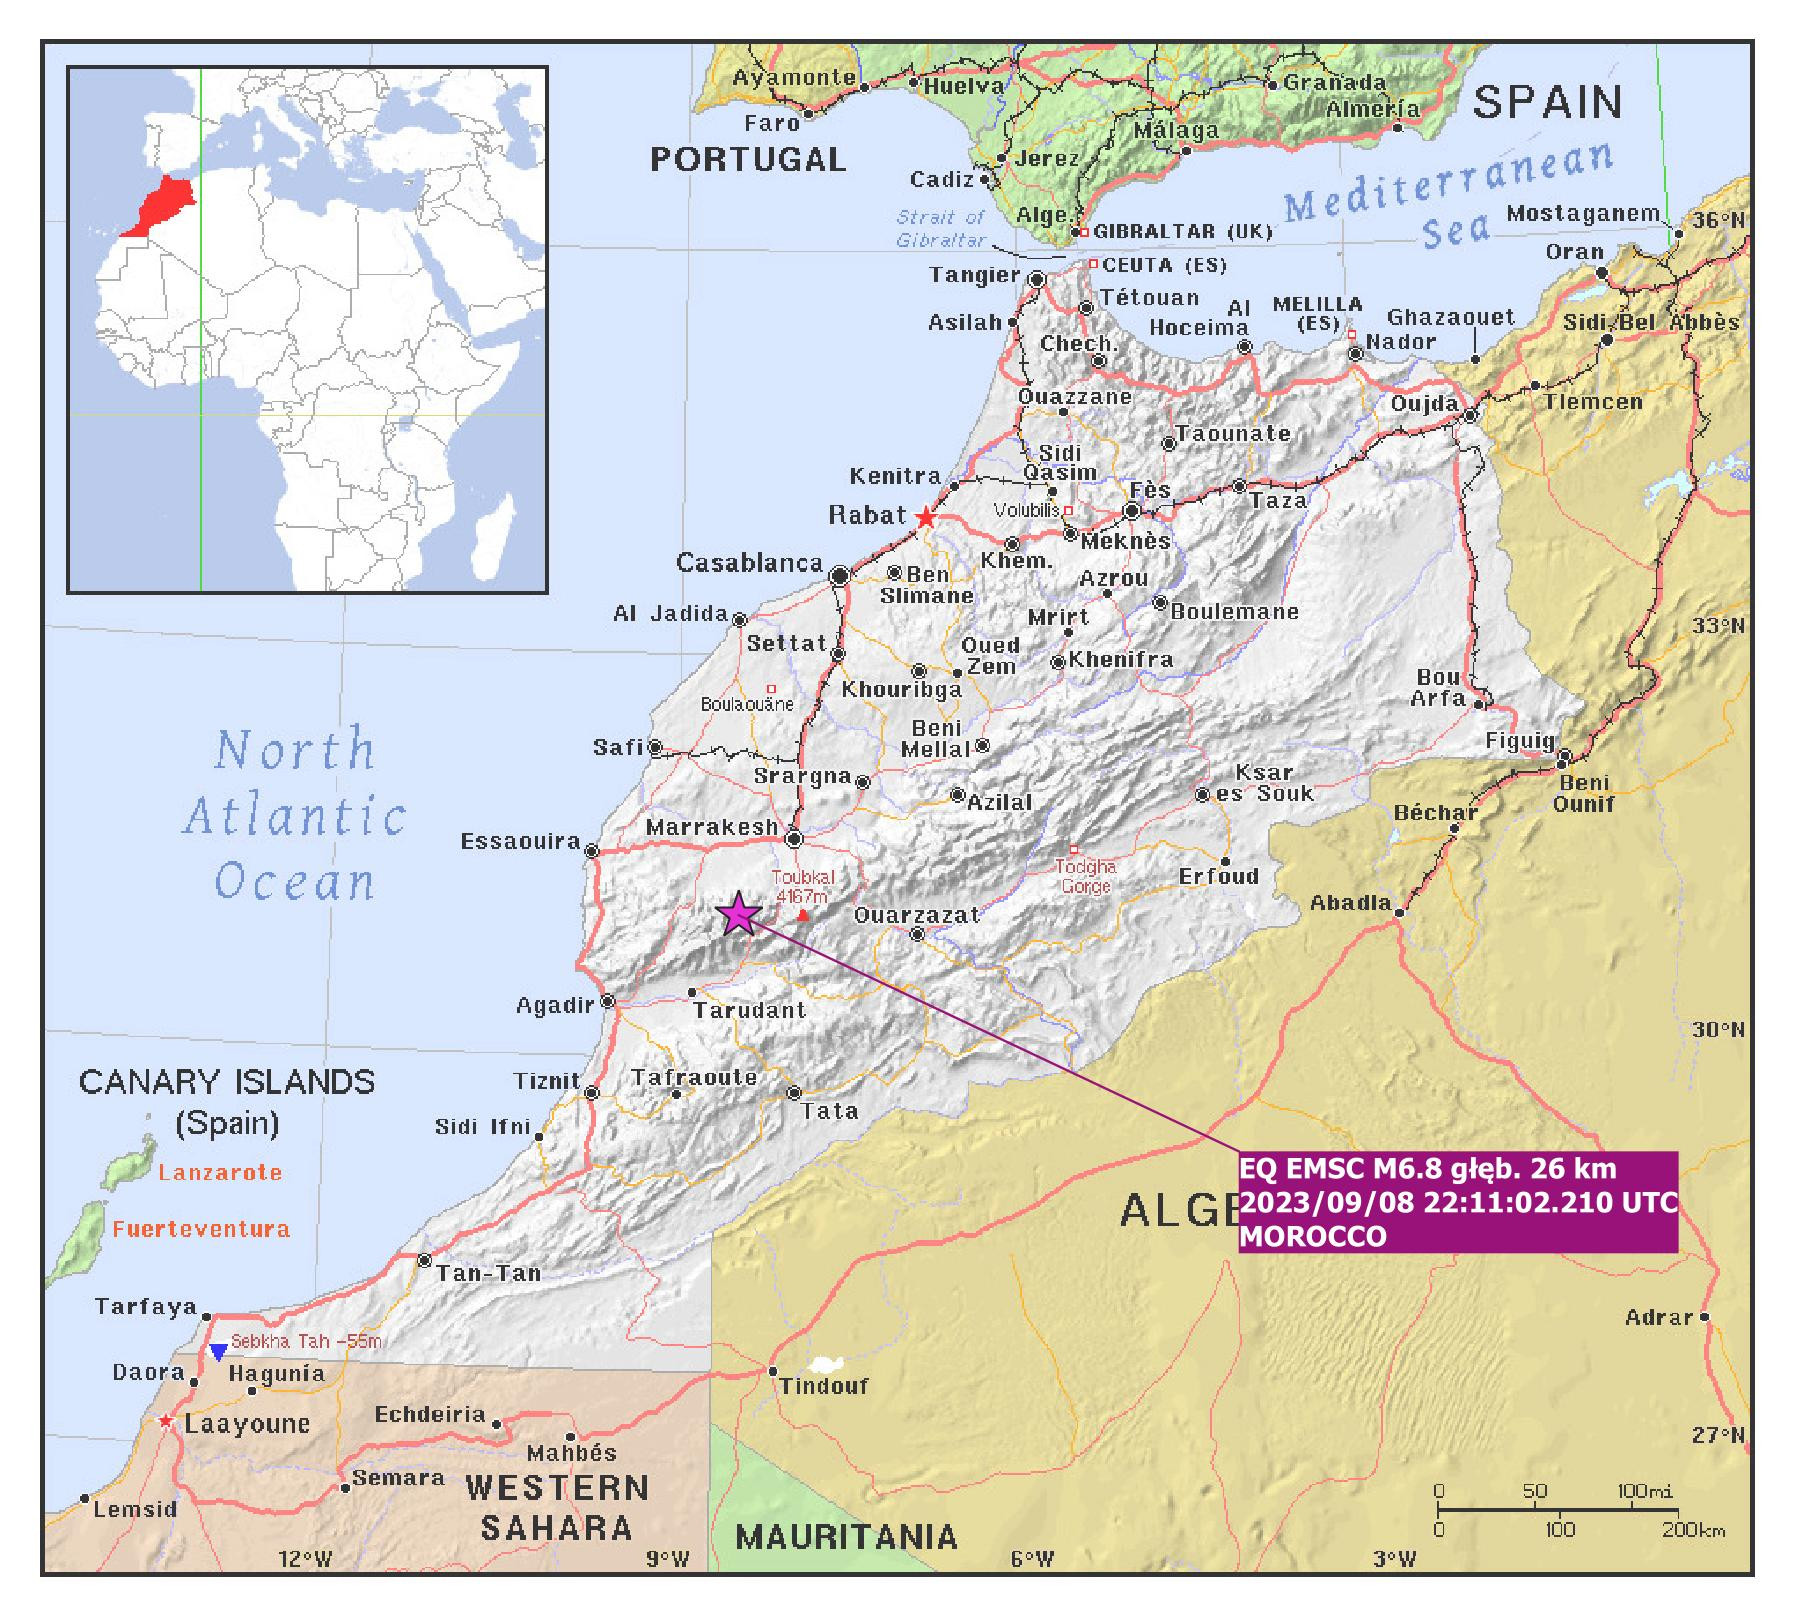 Lokalizacja epicentrum trzęsienia ziemi o magnitudzie M6.8 z 8 września 2023 r., godz. 22:11:02.2 UTC w Maroku – oprac. PSG, wg danych EMSC, mapa bazowa: PAT